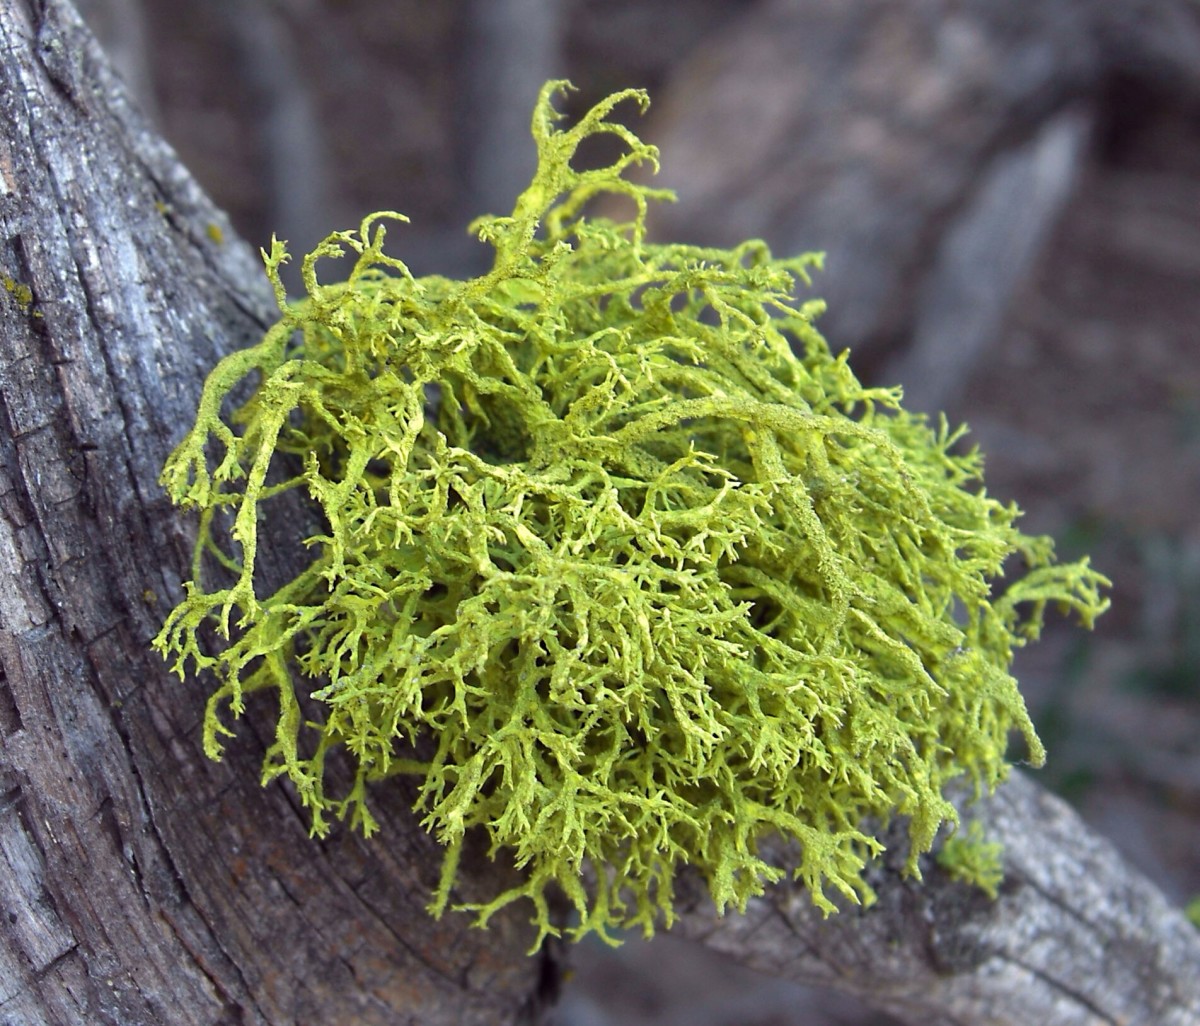 Letharia vulpina or wolf lichen